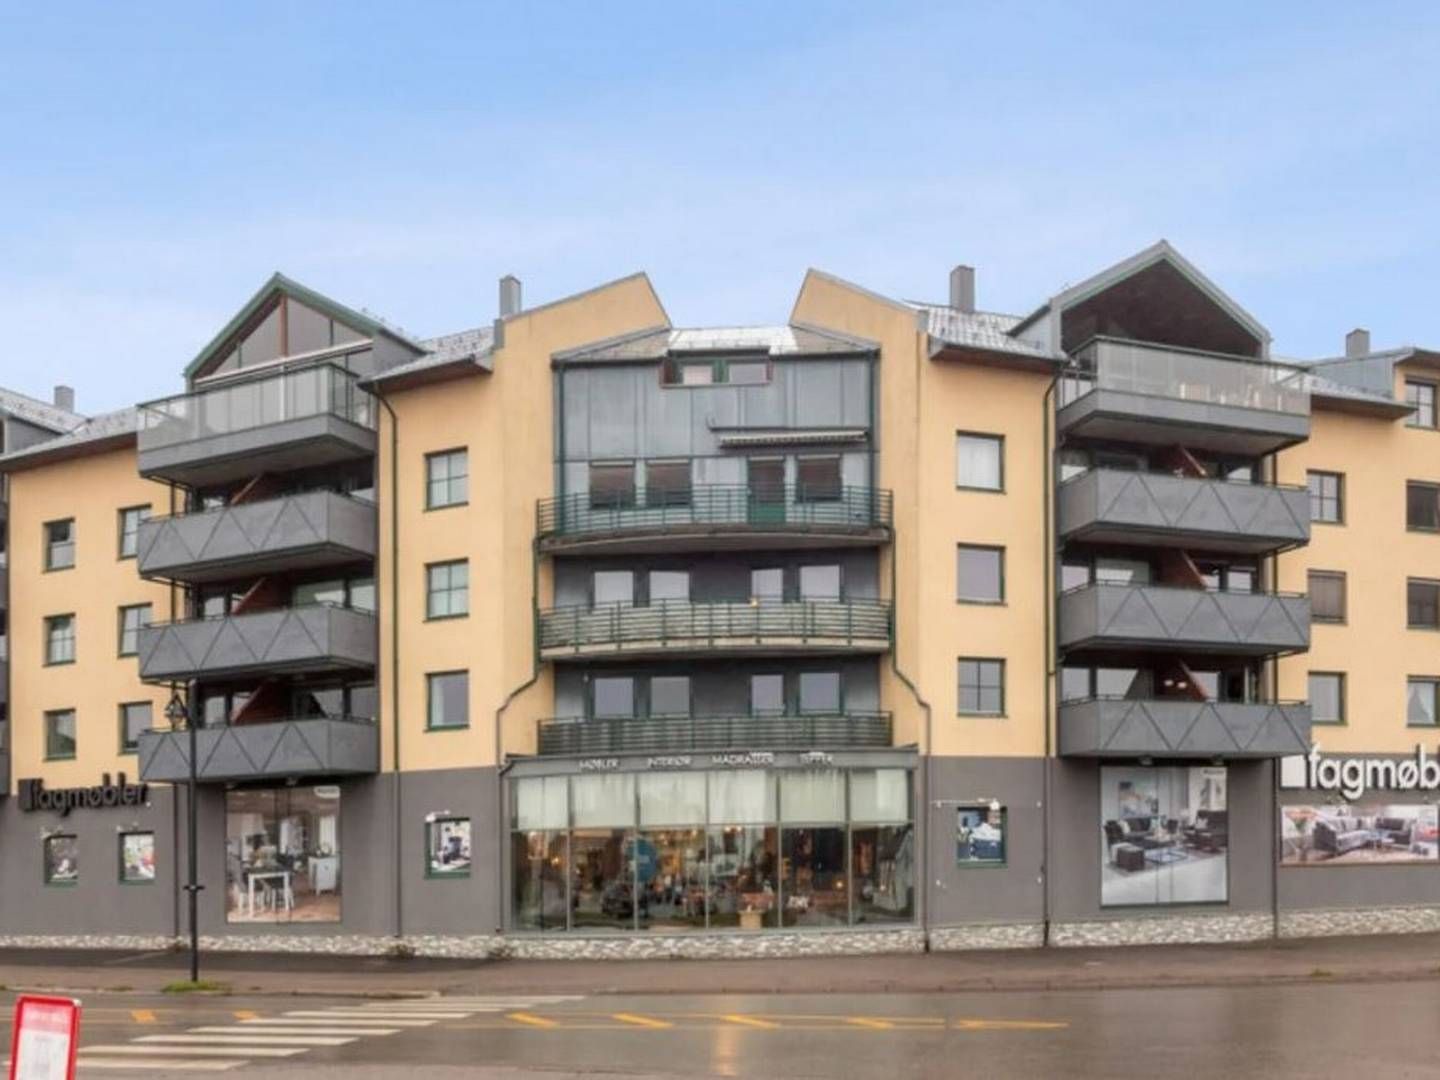 SOLGT: Næringsseksjonen i første etasje på denne bygningen i Grindalsveien 1 er solgt til leietager. | Foto: Obos